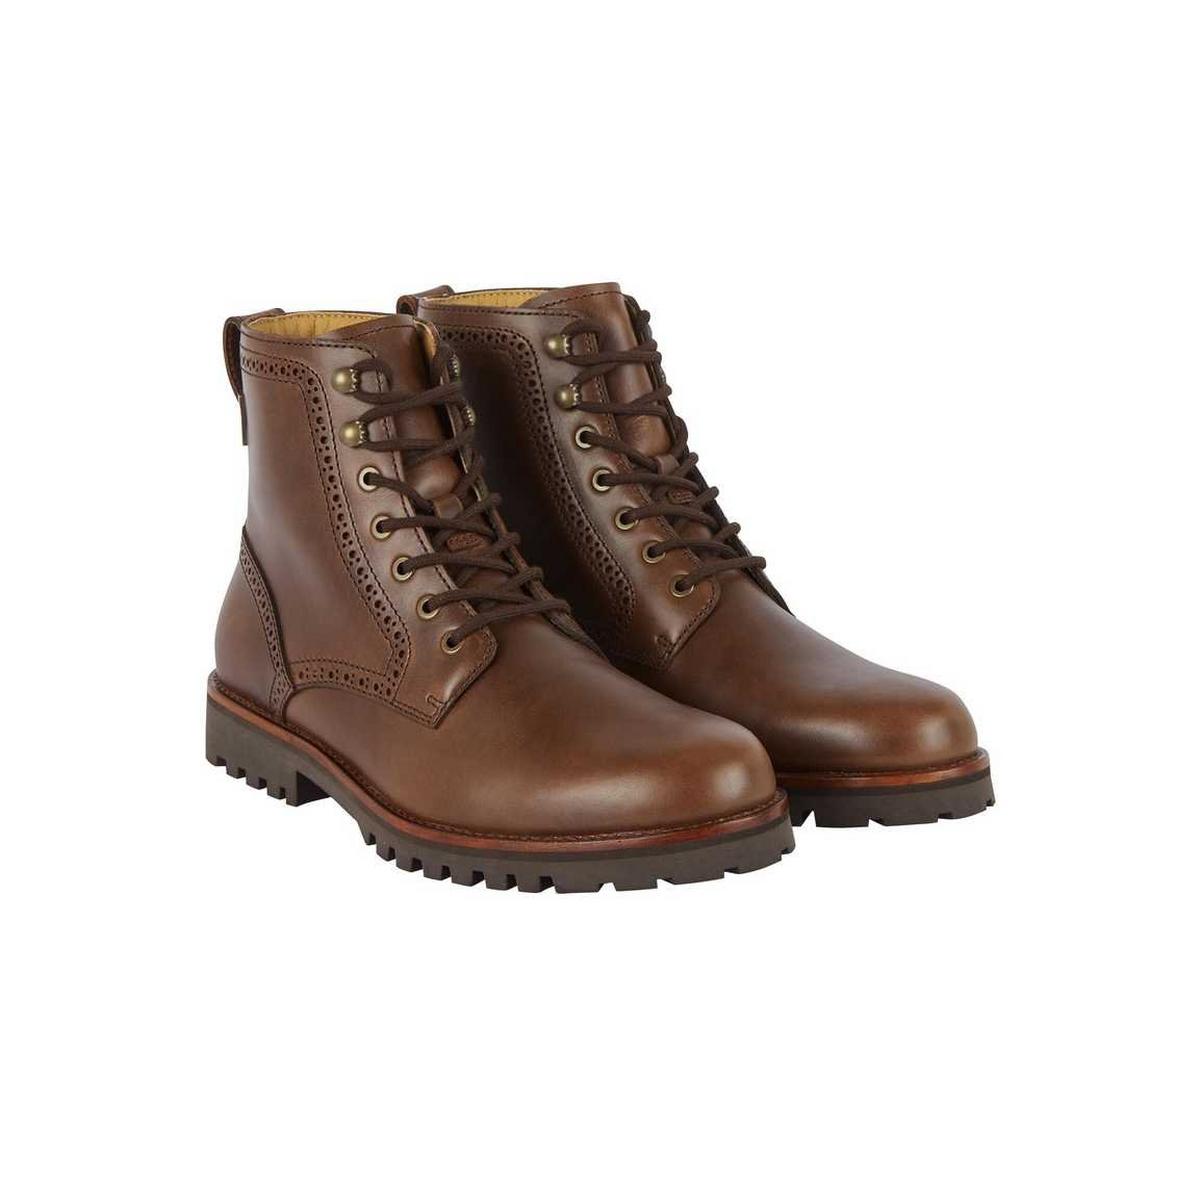 Le Chameau Men's Artemis Leather Boots - Brown